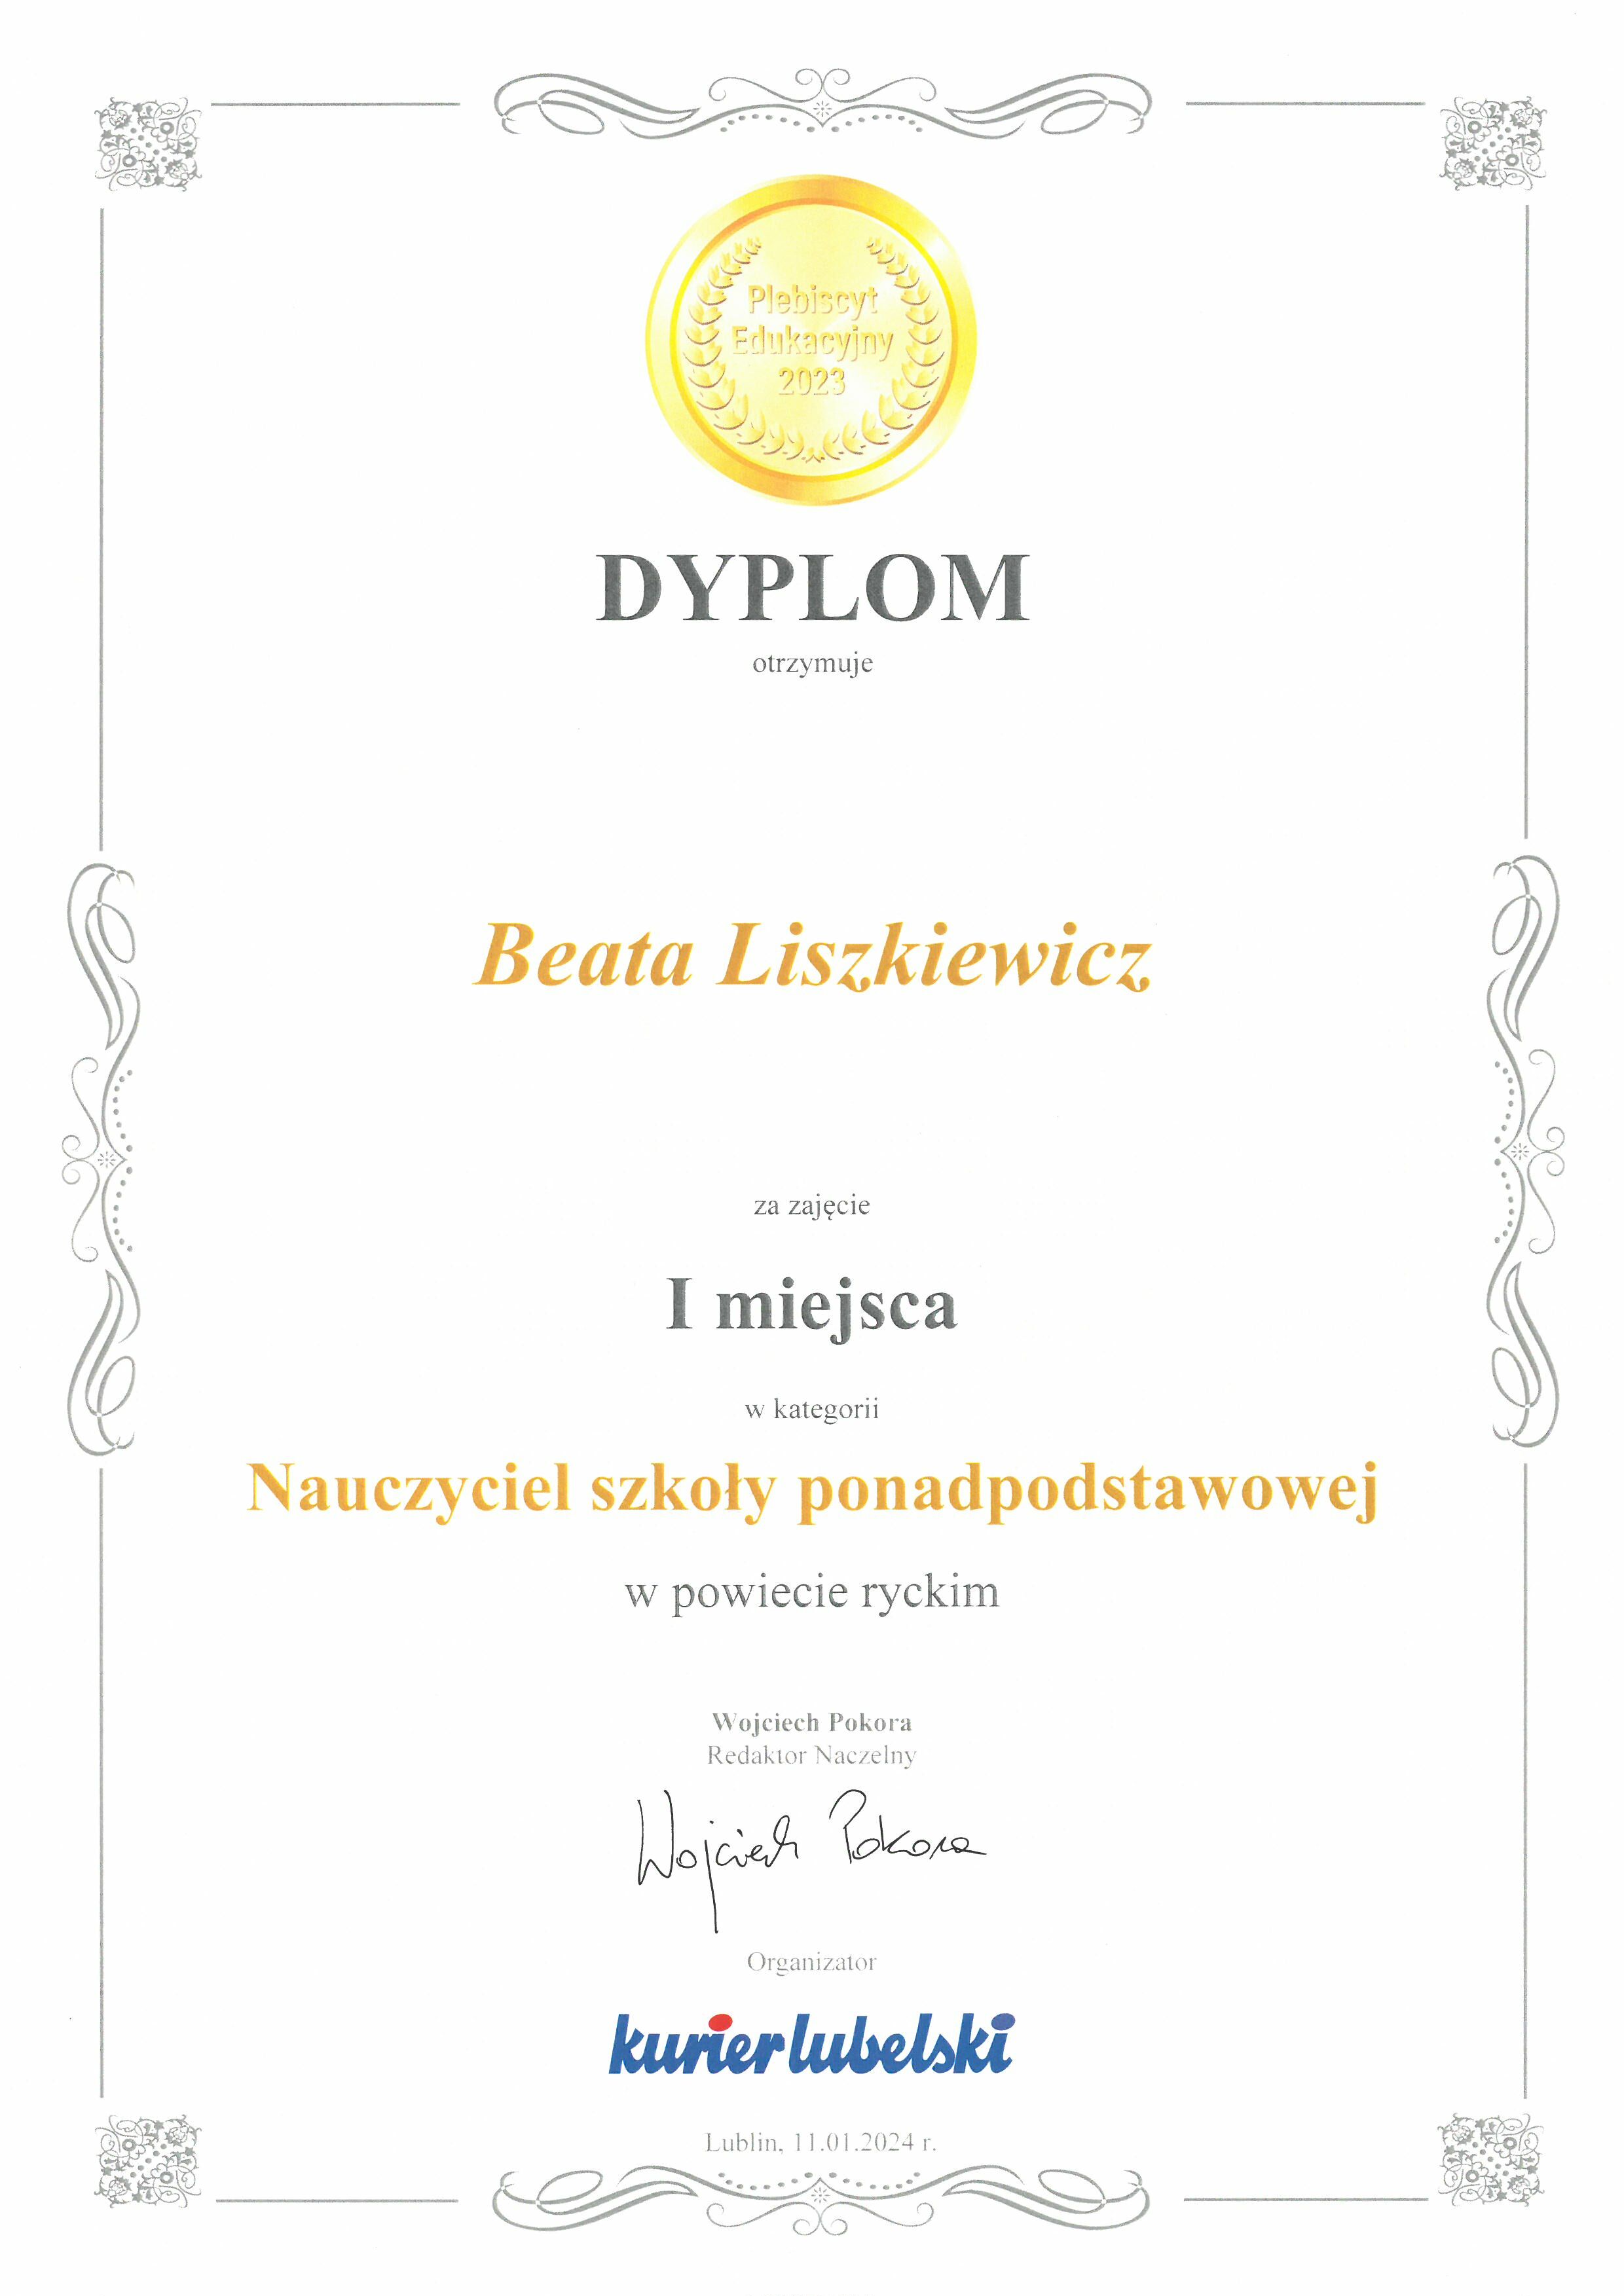 Alt: Zdjęcie dyplomu z złotymi zdobieniami, zawierającego tekst